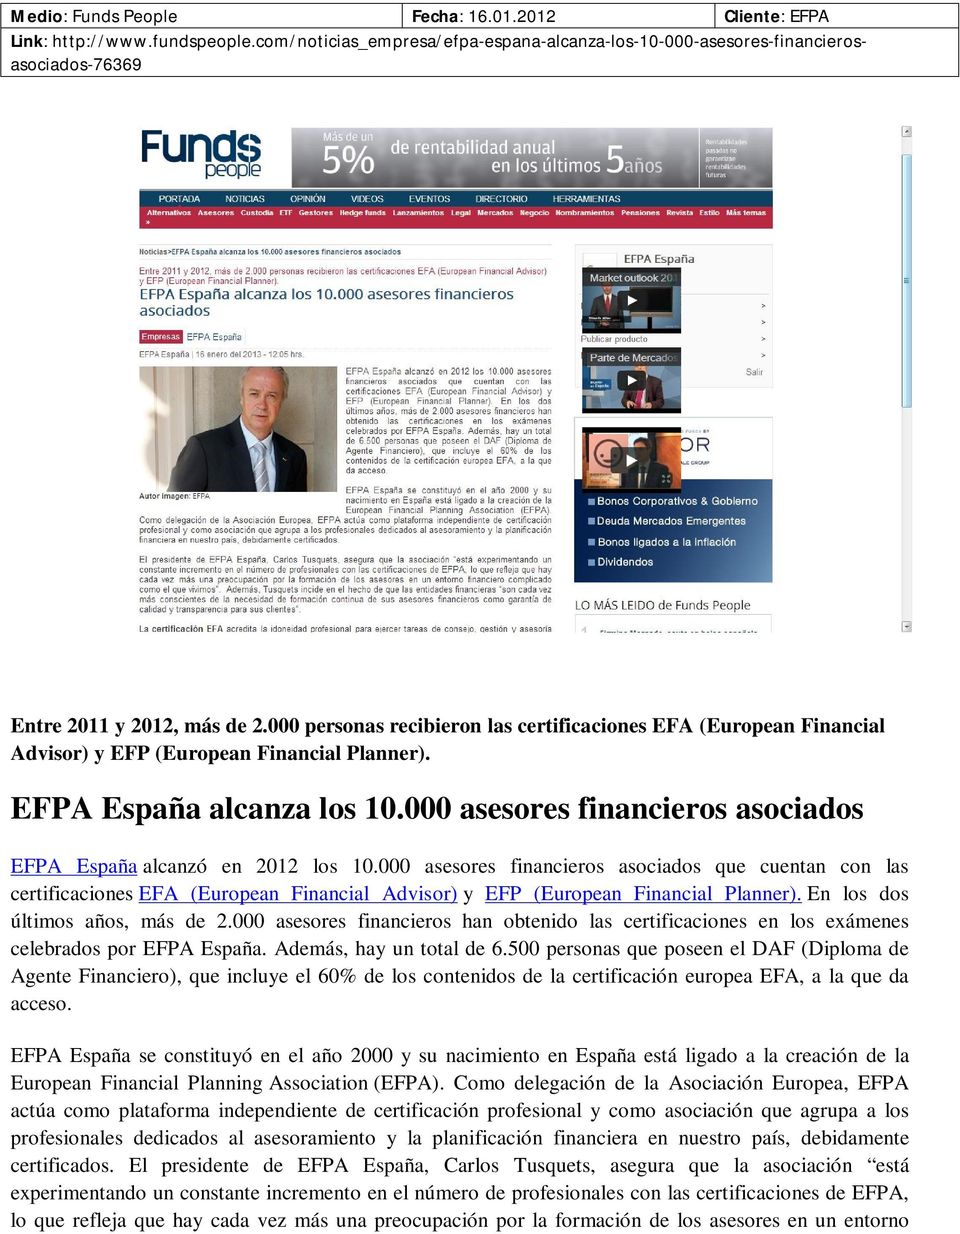 000 asesores financieros asociados certificaciones EFA (European Financial Advisor) y EFP (European Financial Planner). En los dos últimos años, más de 2.